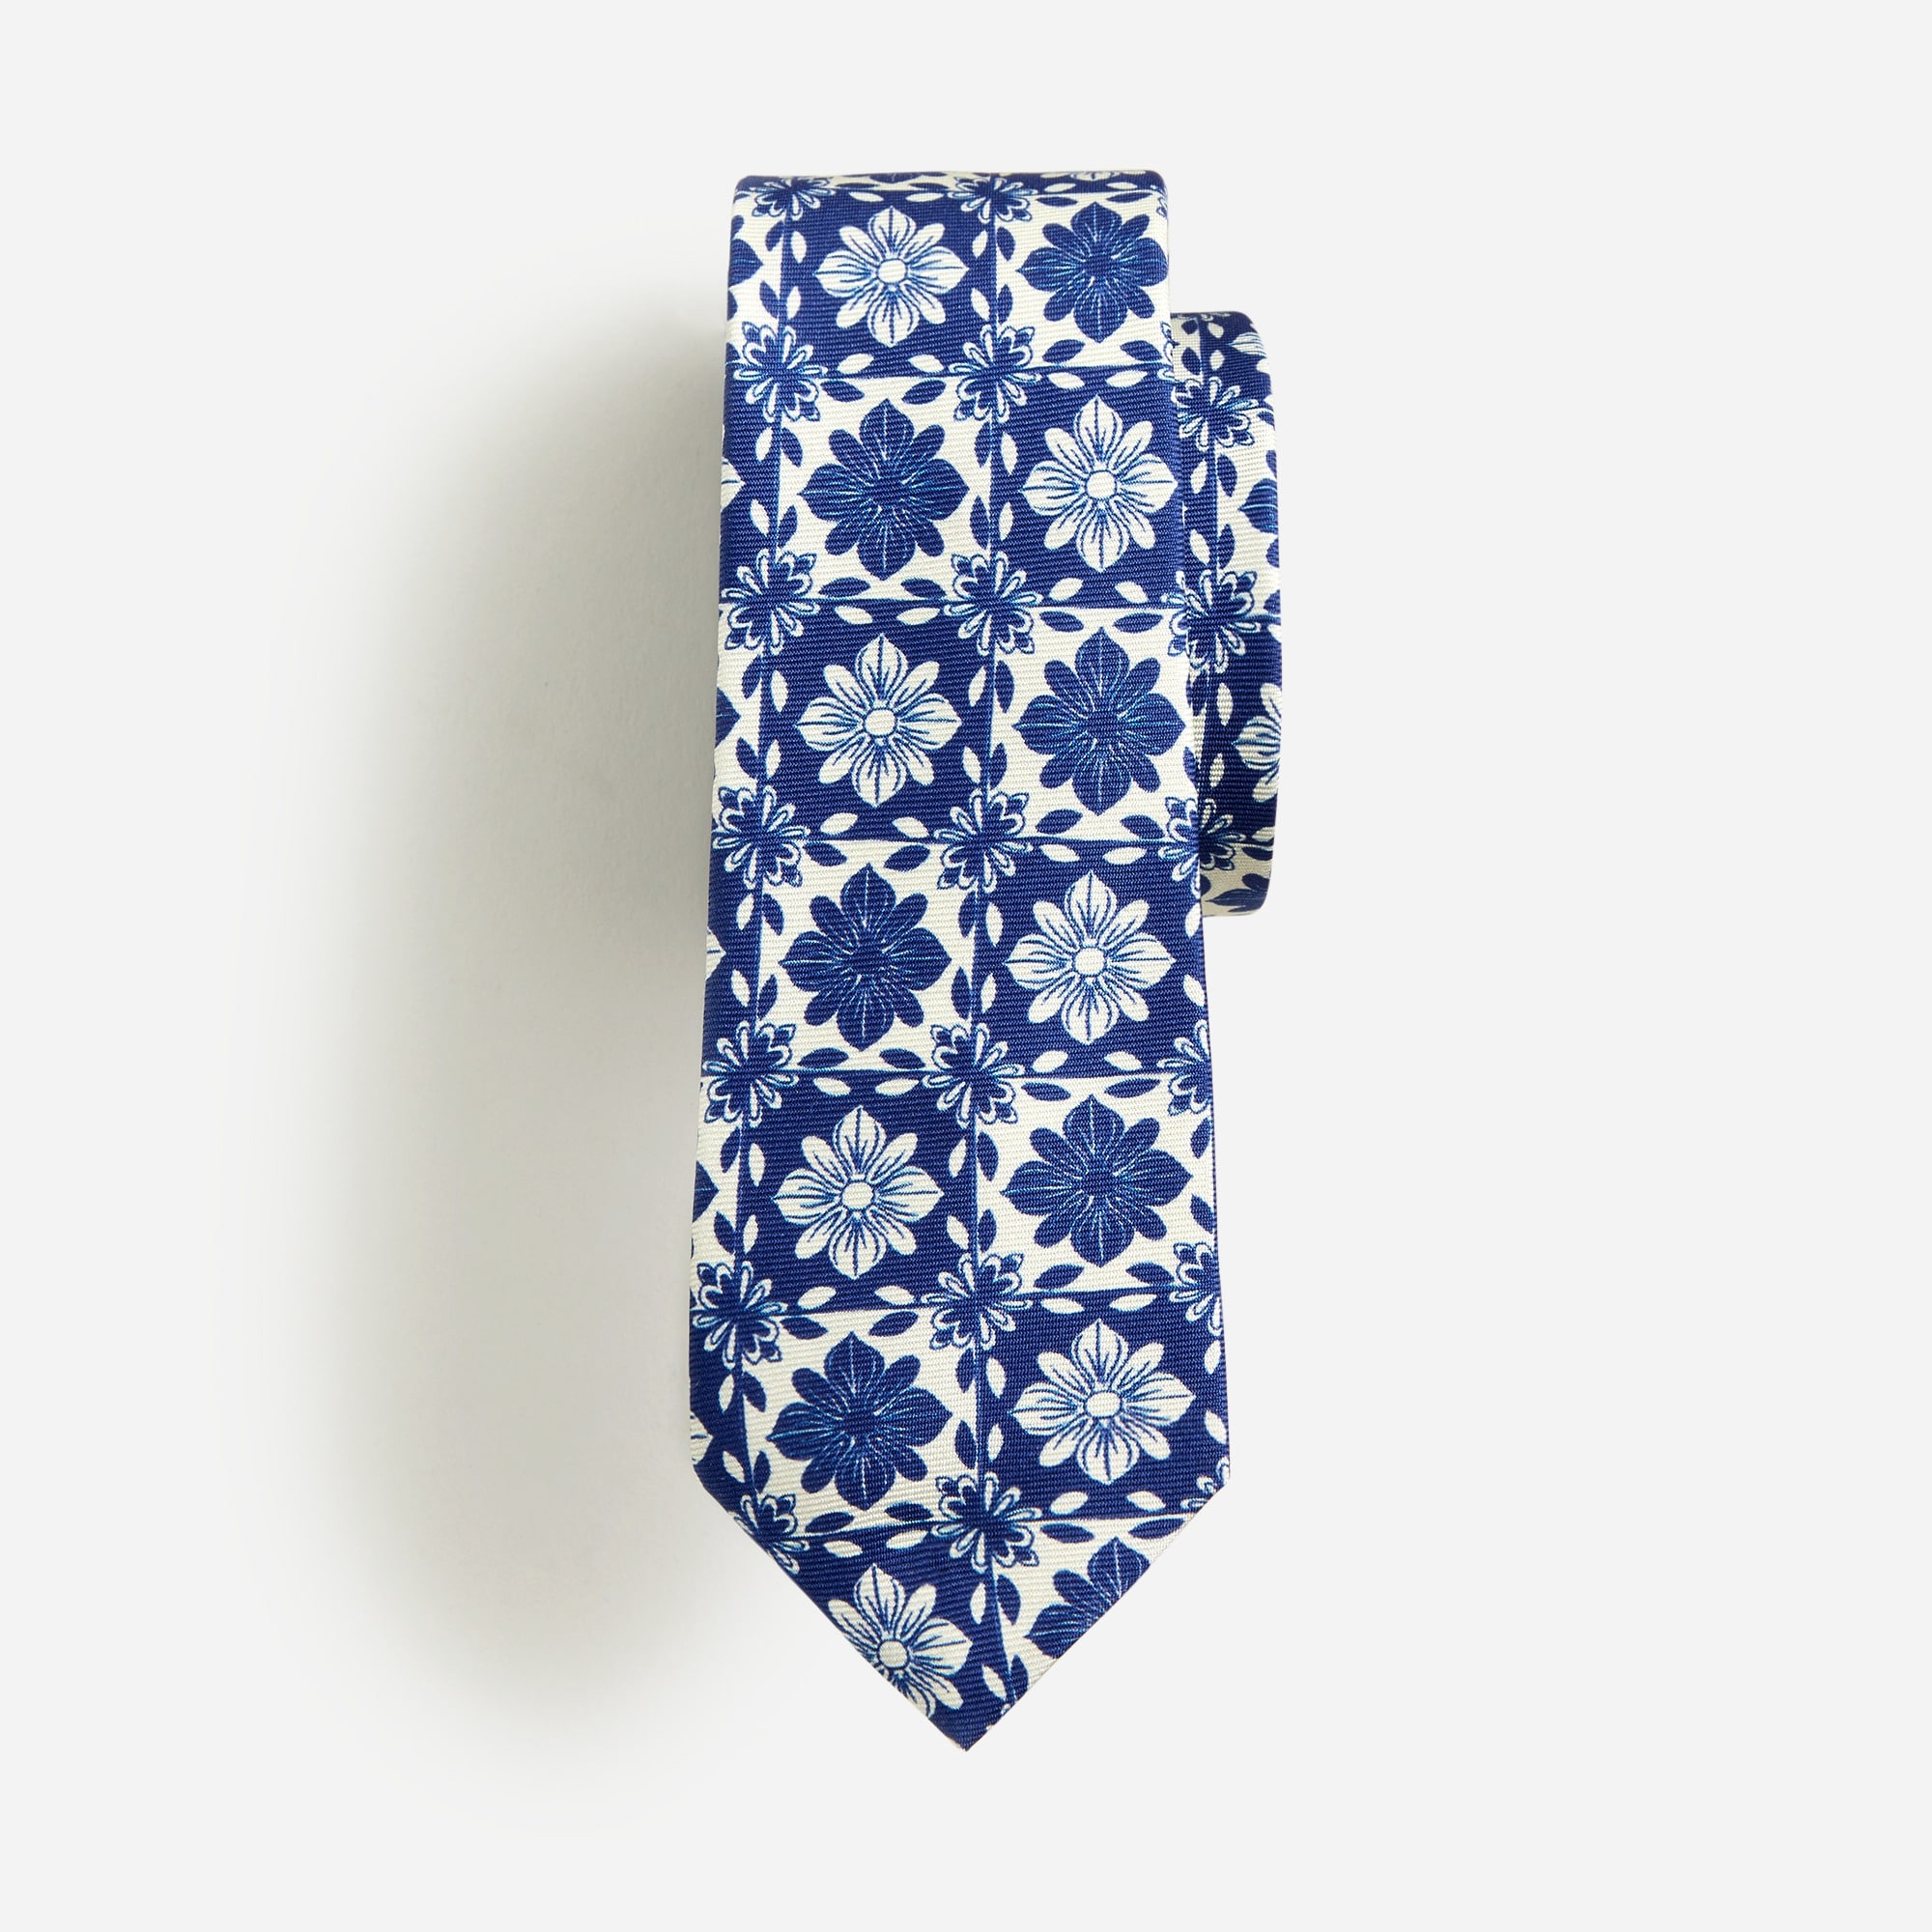 Jcrew Kids silk tie in Island tile print